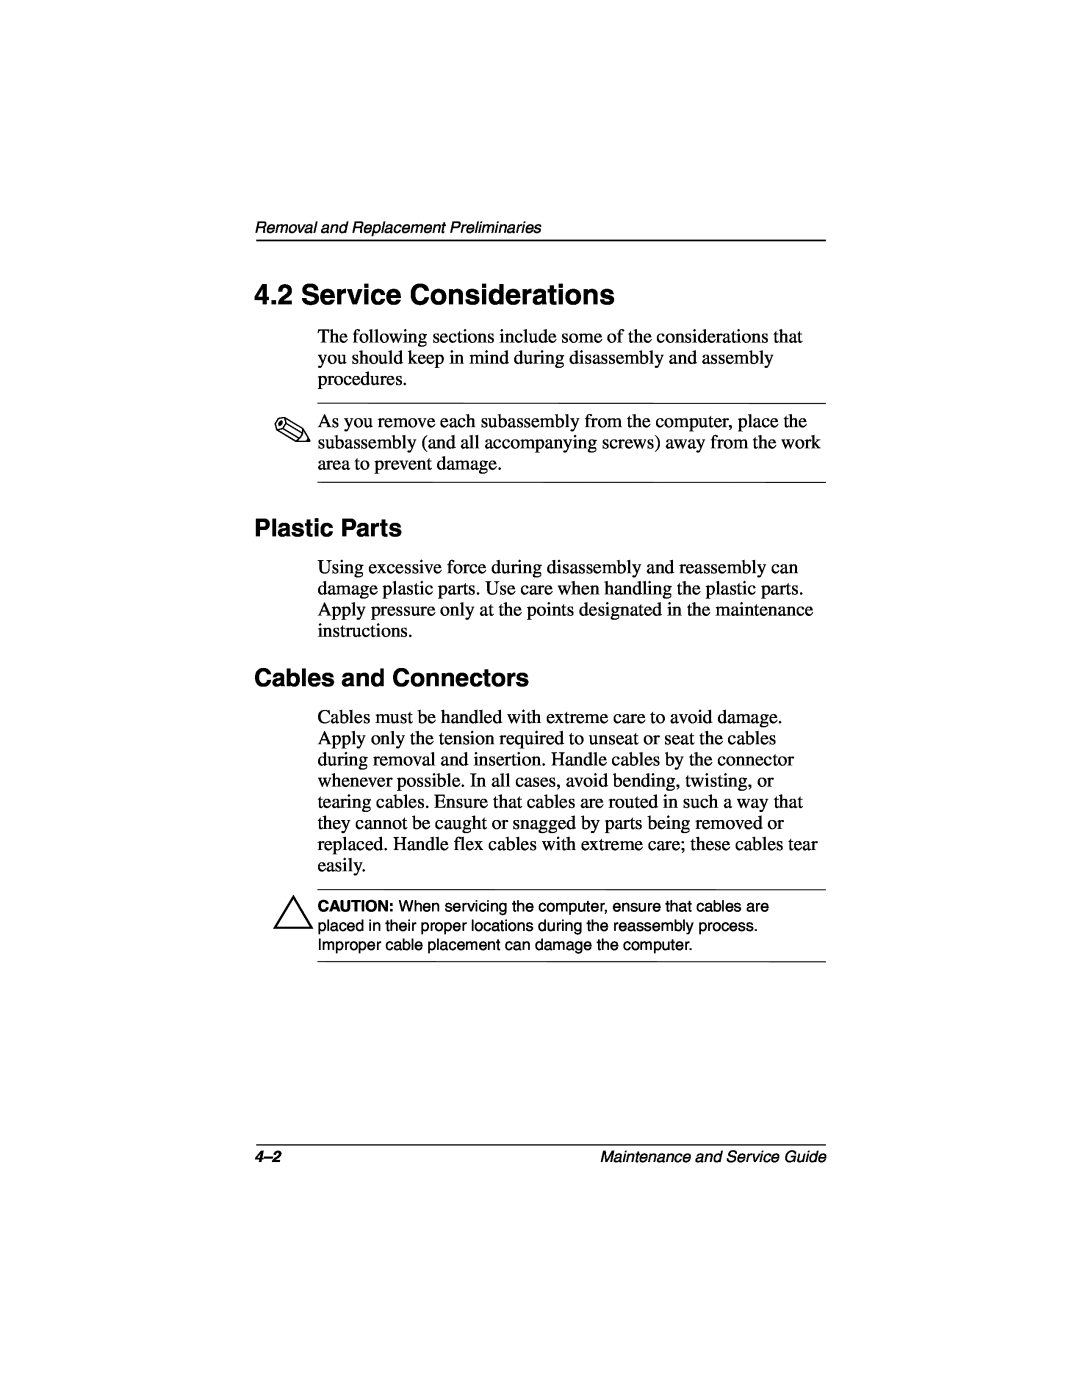 Compaq N160 manual Service Considerations, Plastic Parts, Cables and Connectors 